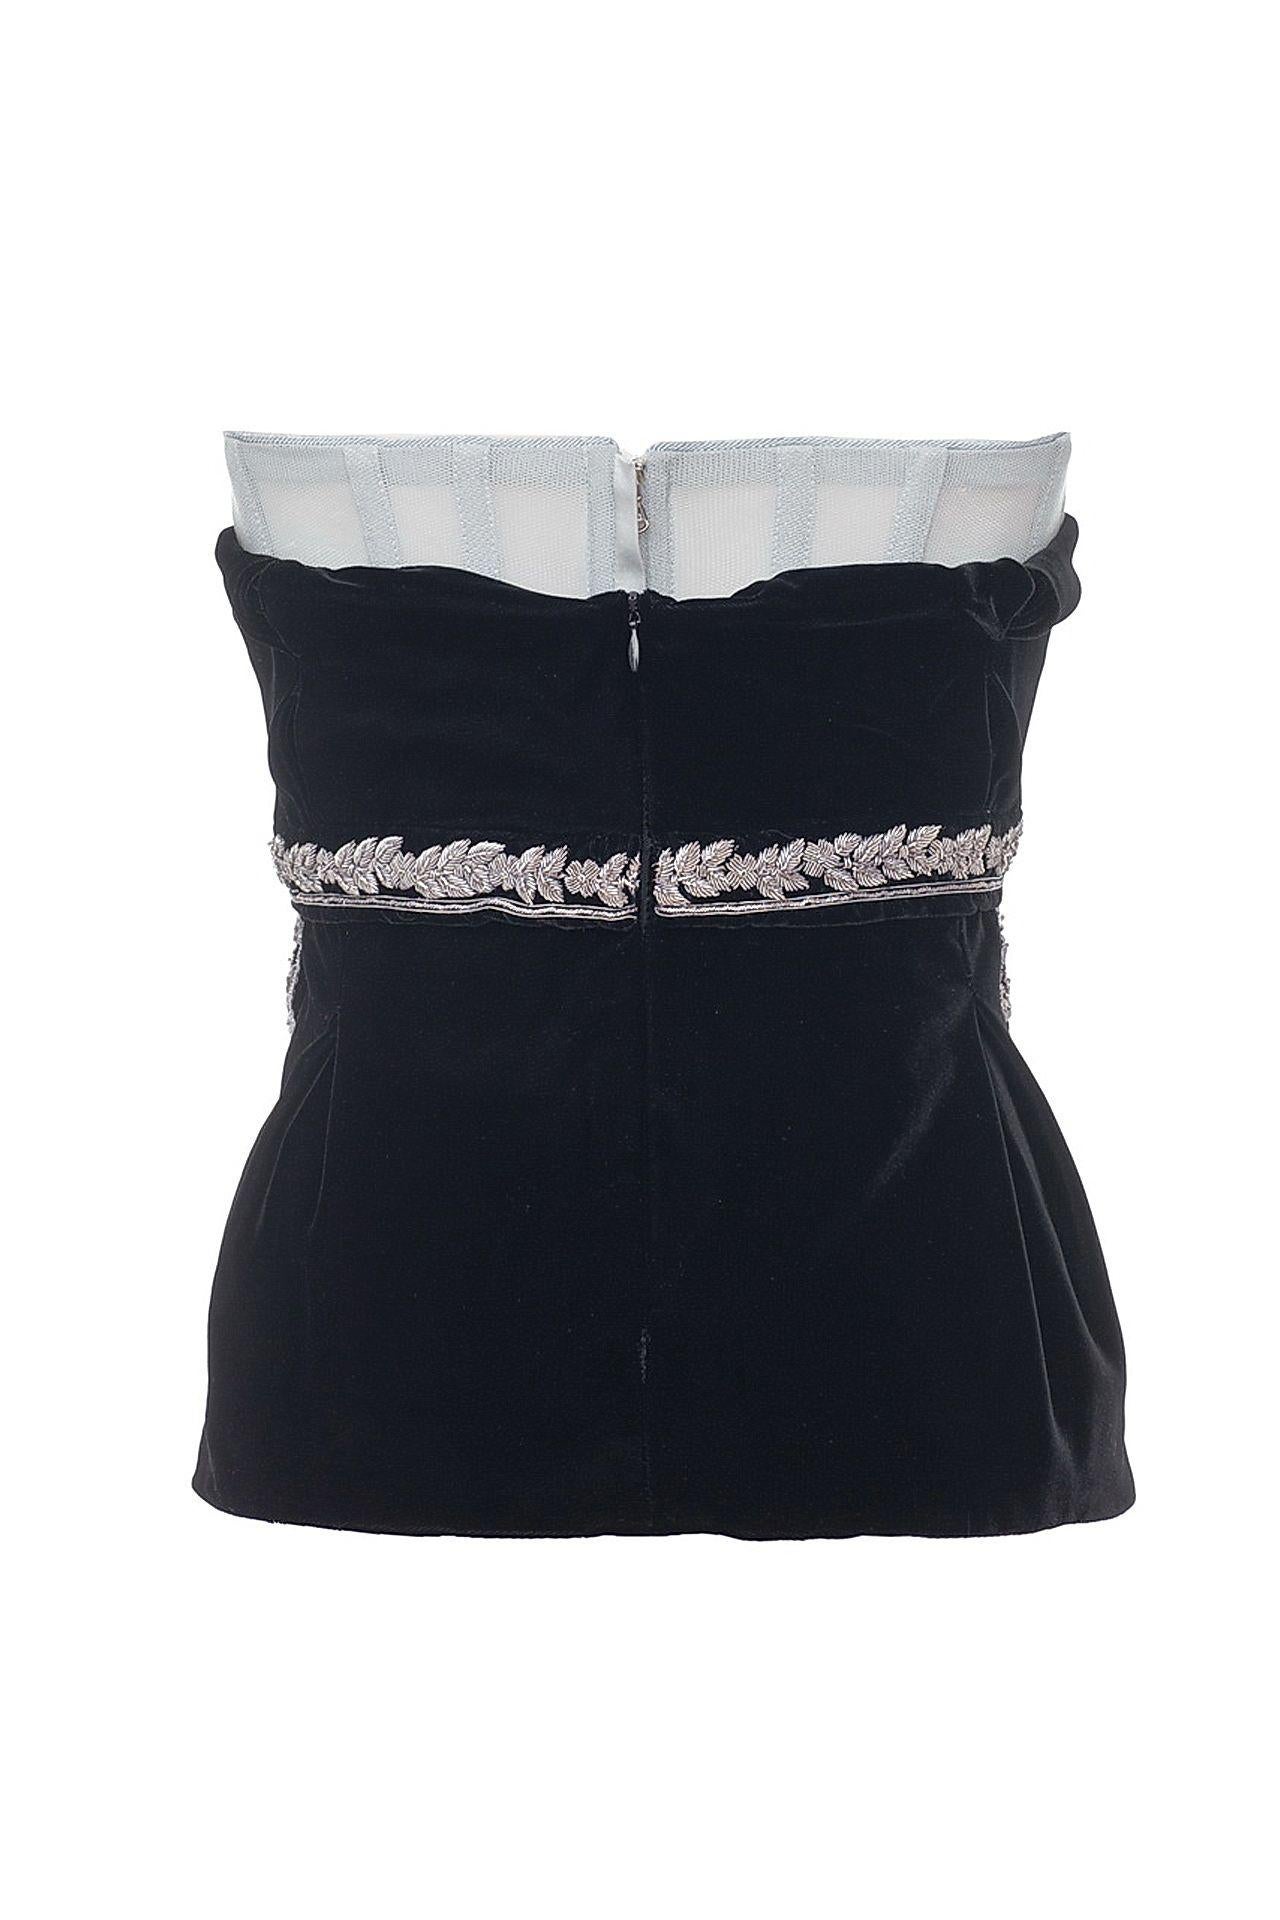 Dolce & Gabbana Embellished Black Velvet Corset 

Black Velvet
Tulle lining
Embroidery

IT Size 40 - US 4

New